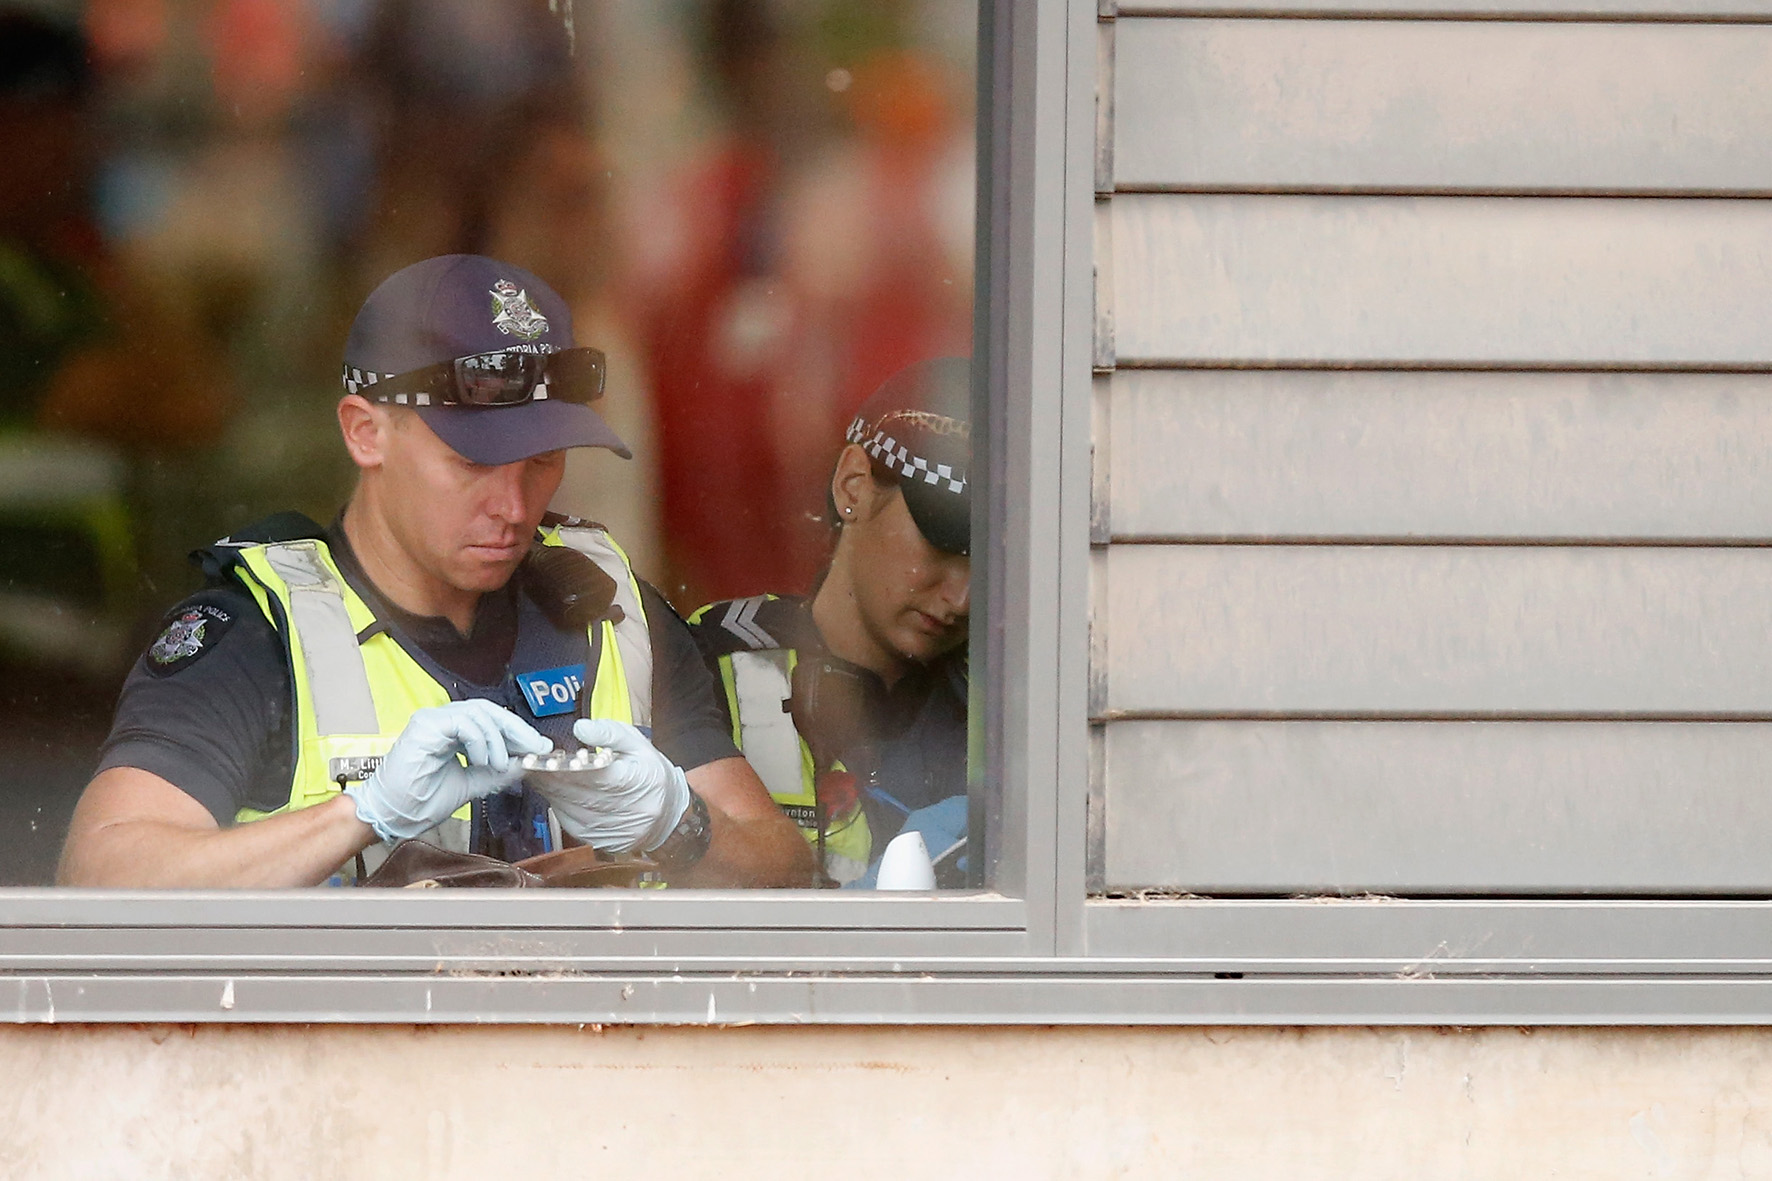 Op deze foto zie je politie in Australie tijdens een festival iemands pillen uit een tas controleren.